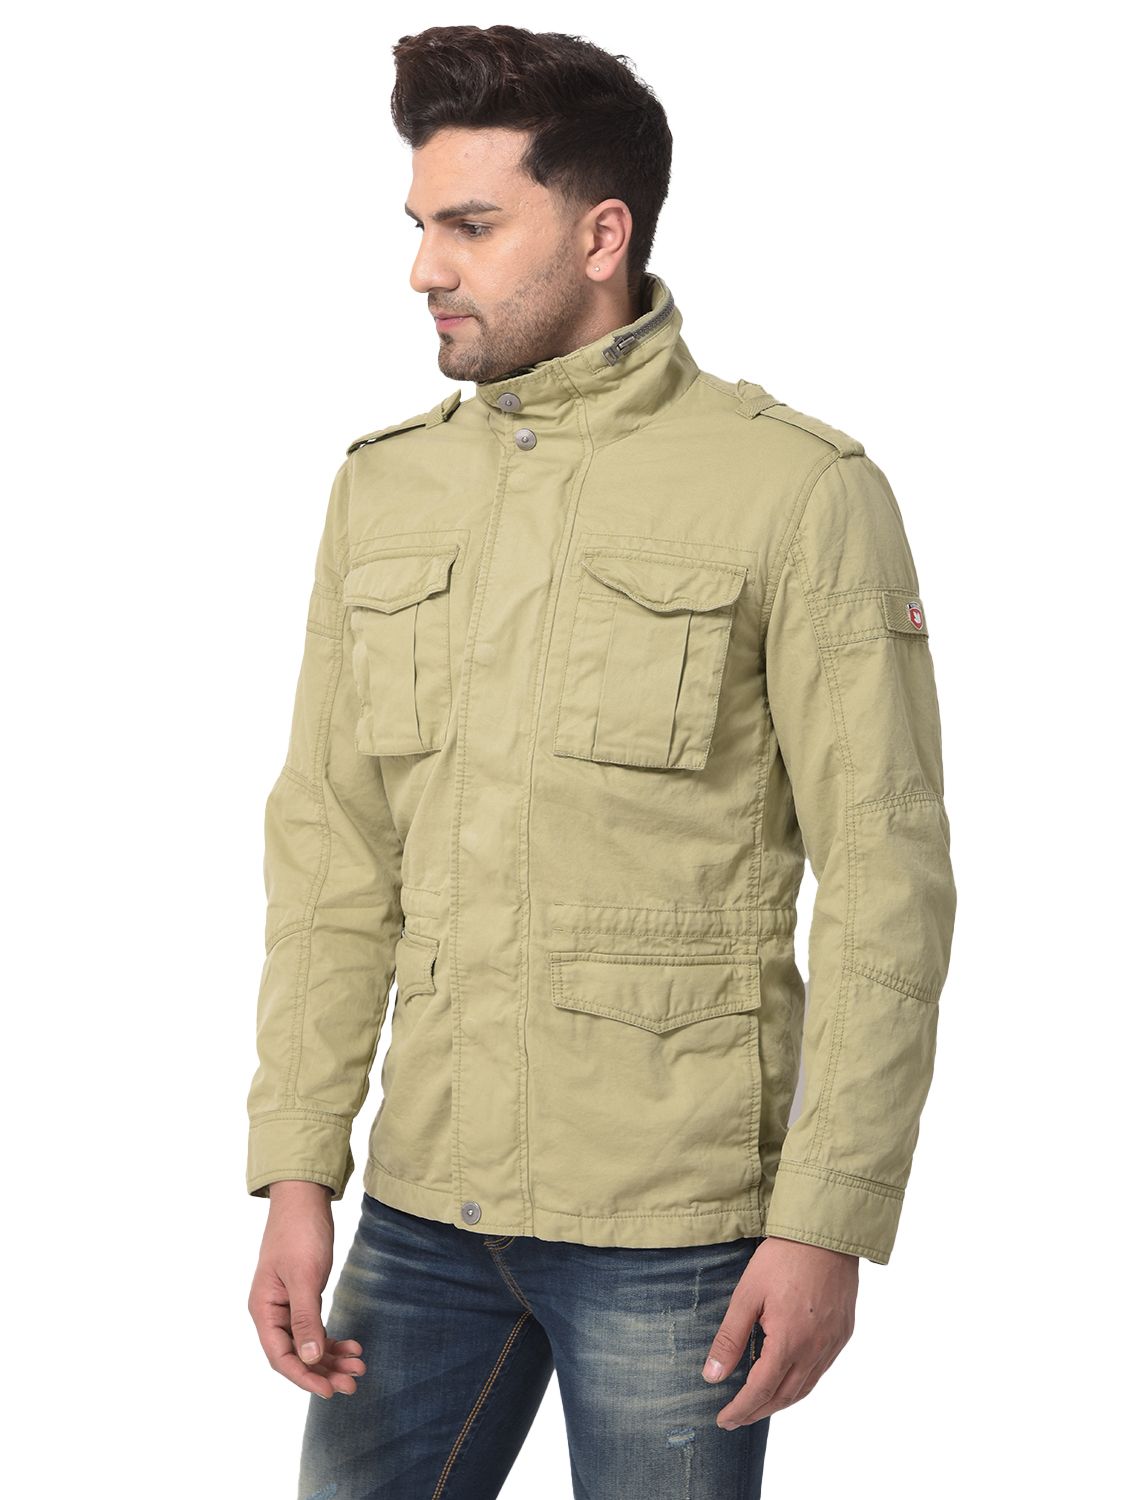 Buy Woodland Black Hooded Full Sleeves Jacket for Men Online @ Tata CLiQ